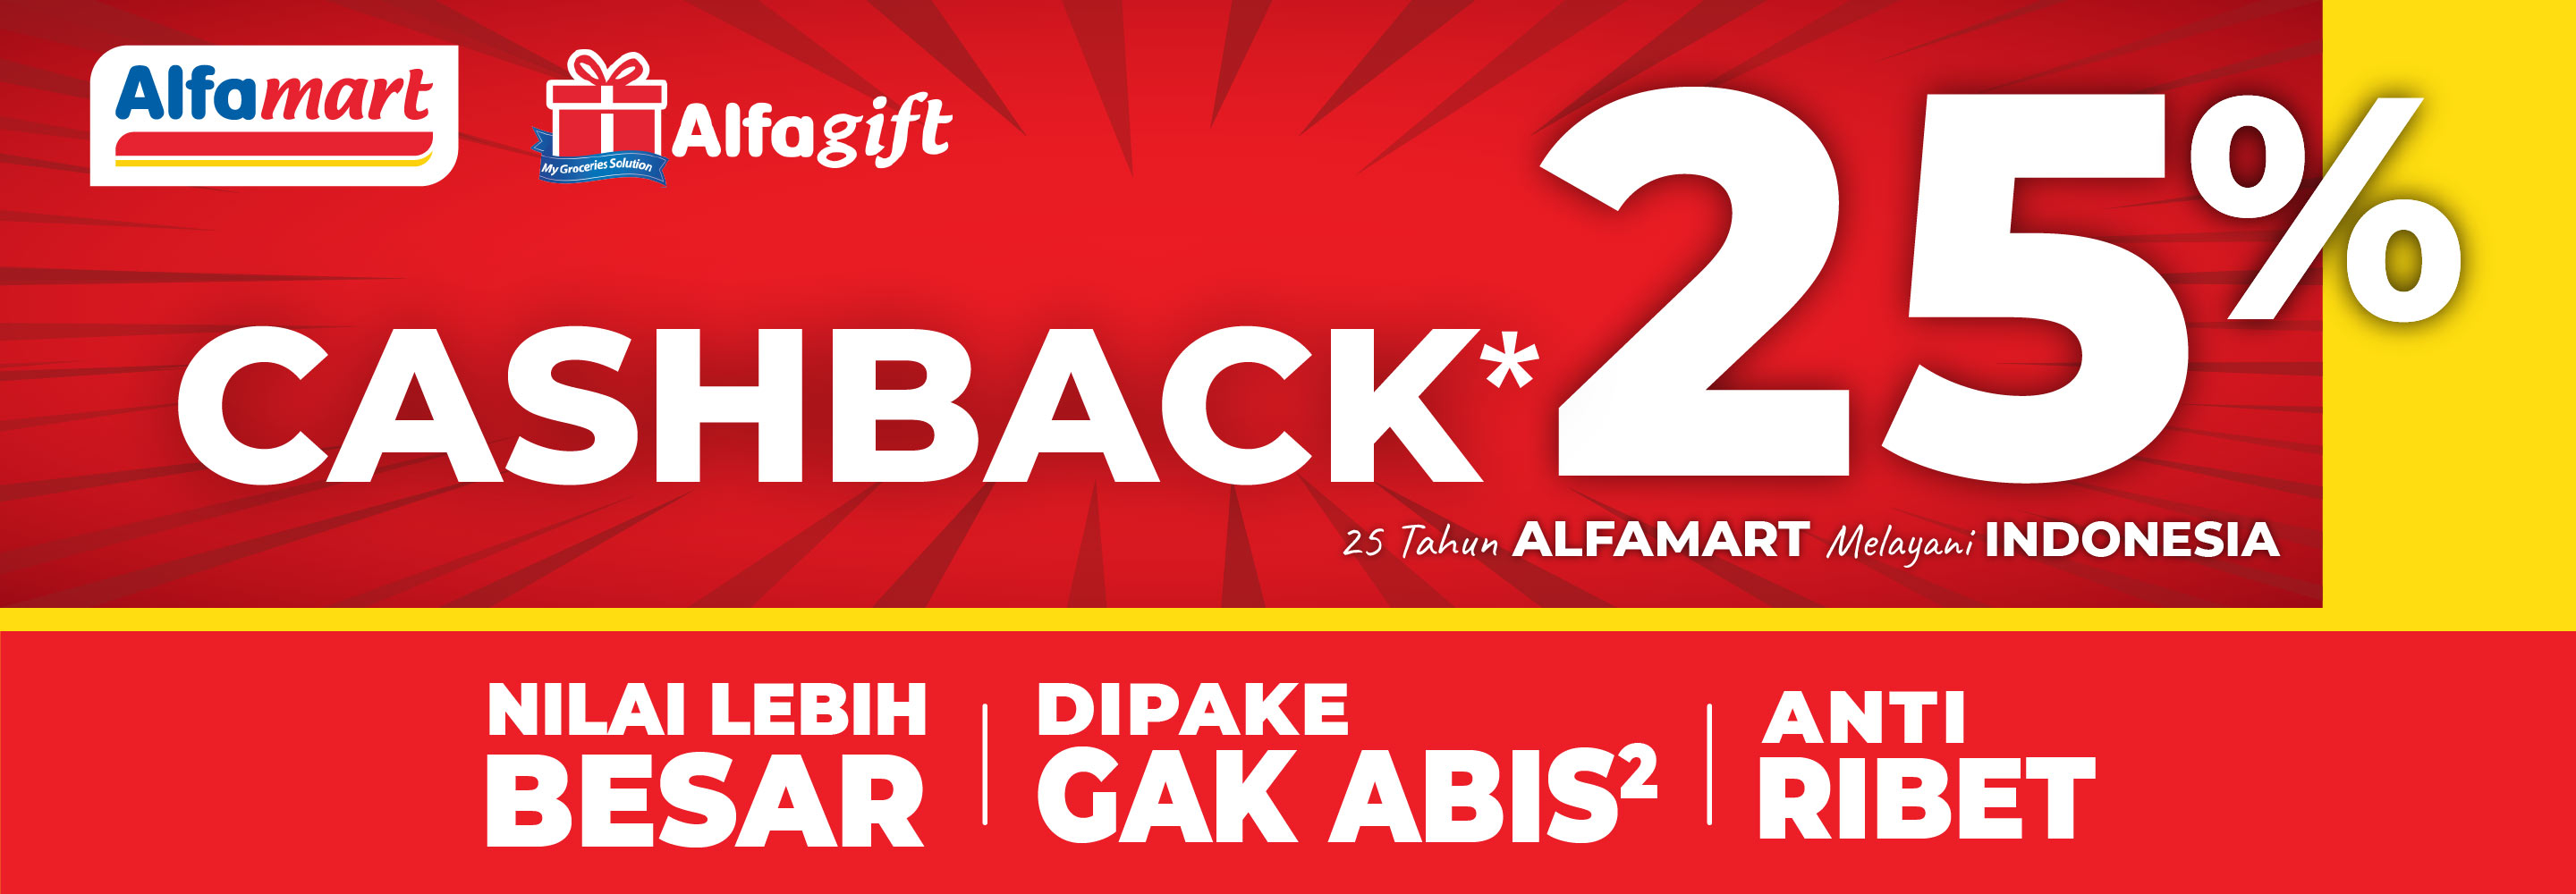 Banner promo CASHBACK 25% Alfamart